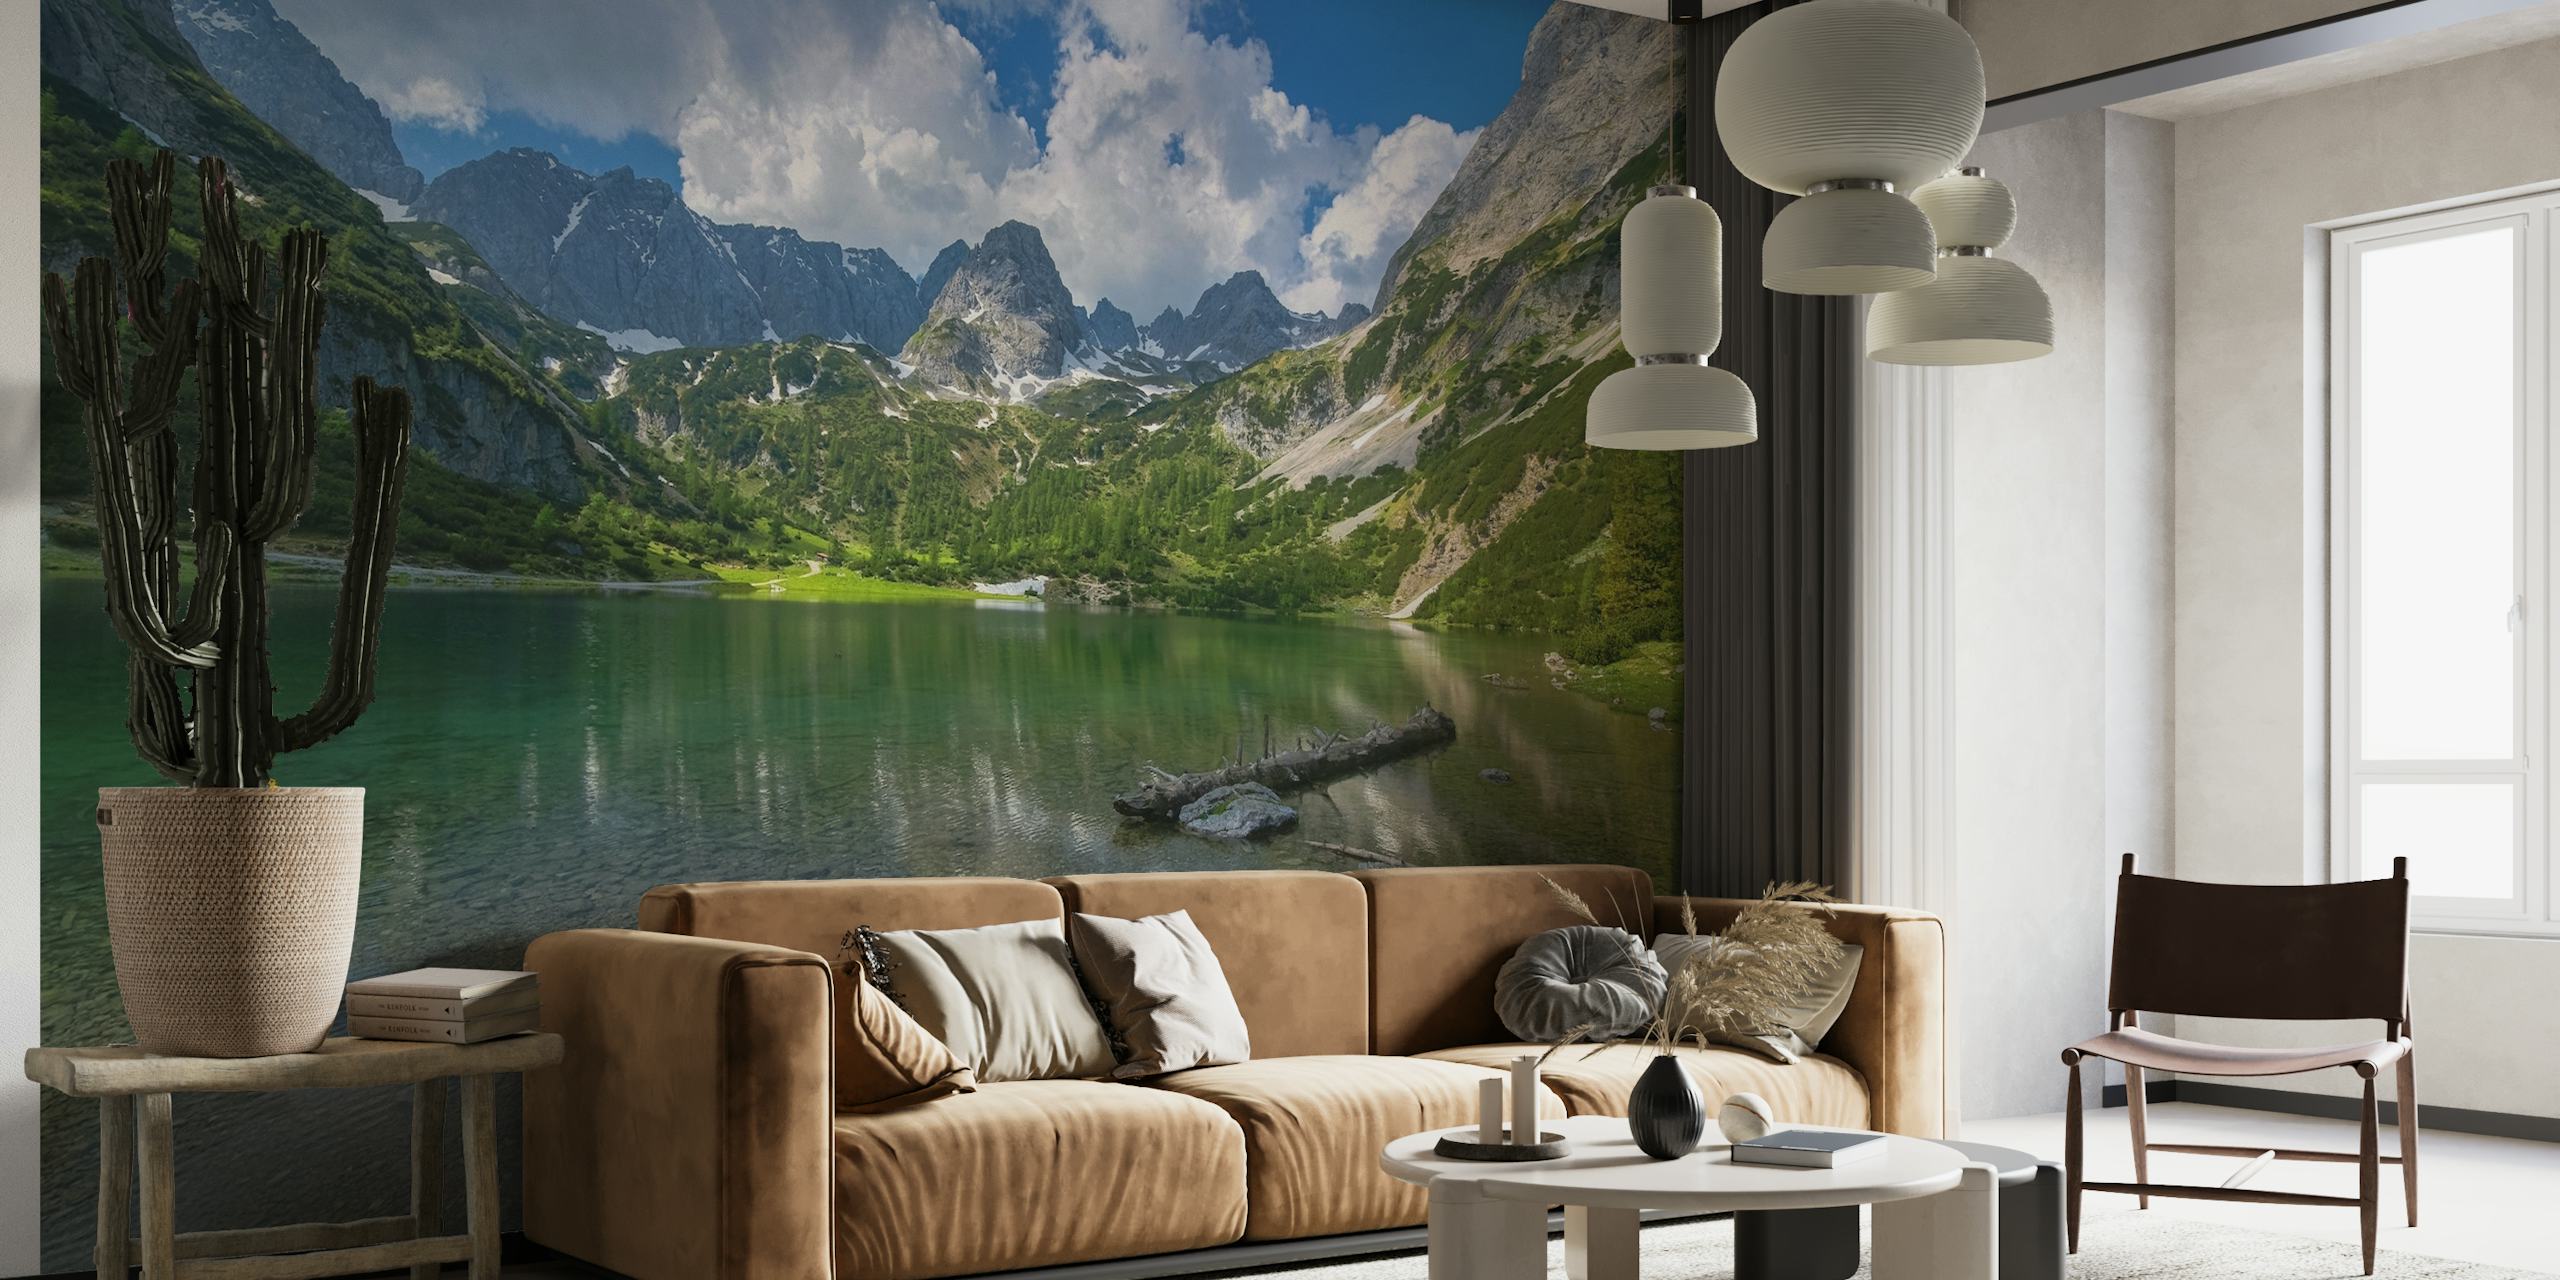 Fototapete „Seebensea in Tirol“, die einen ruhigen Alpensee mit Bergreflexionen zeigt